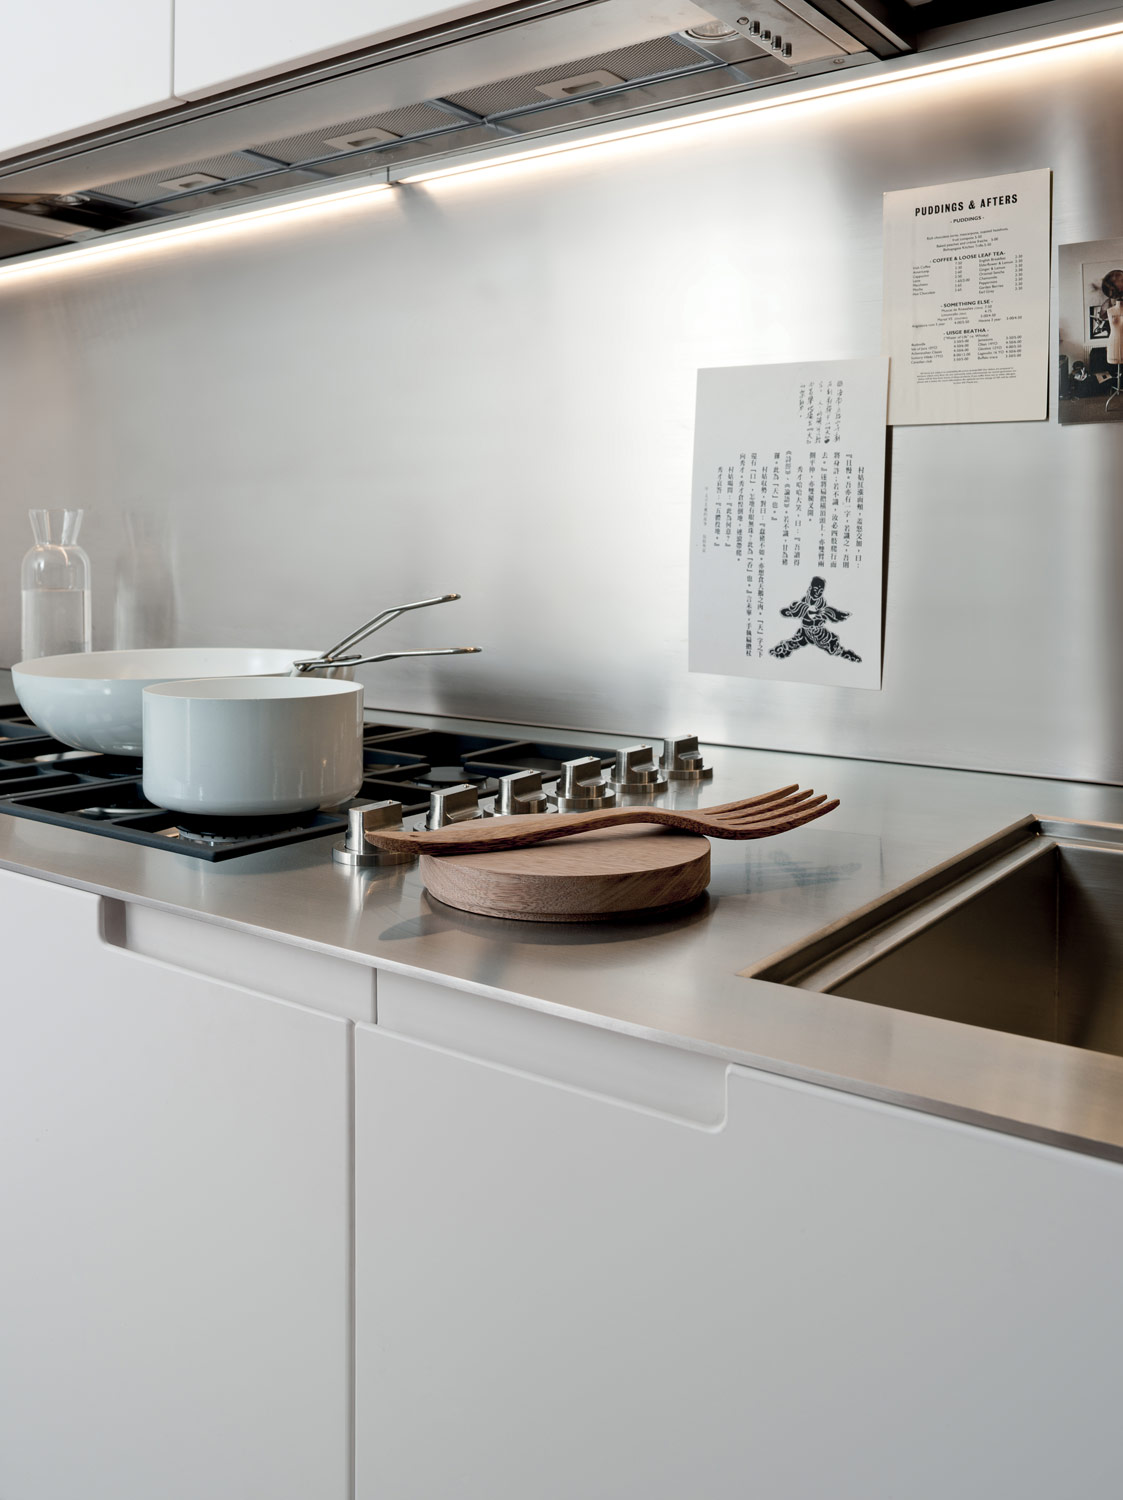 Kuhinje po meri - ideje za kuhinje - bela kuhinja sa stolom - ukupana rucica - tanka radna ploca - potpuno ugradni aspirator koji se ne vidi